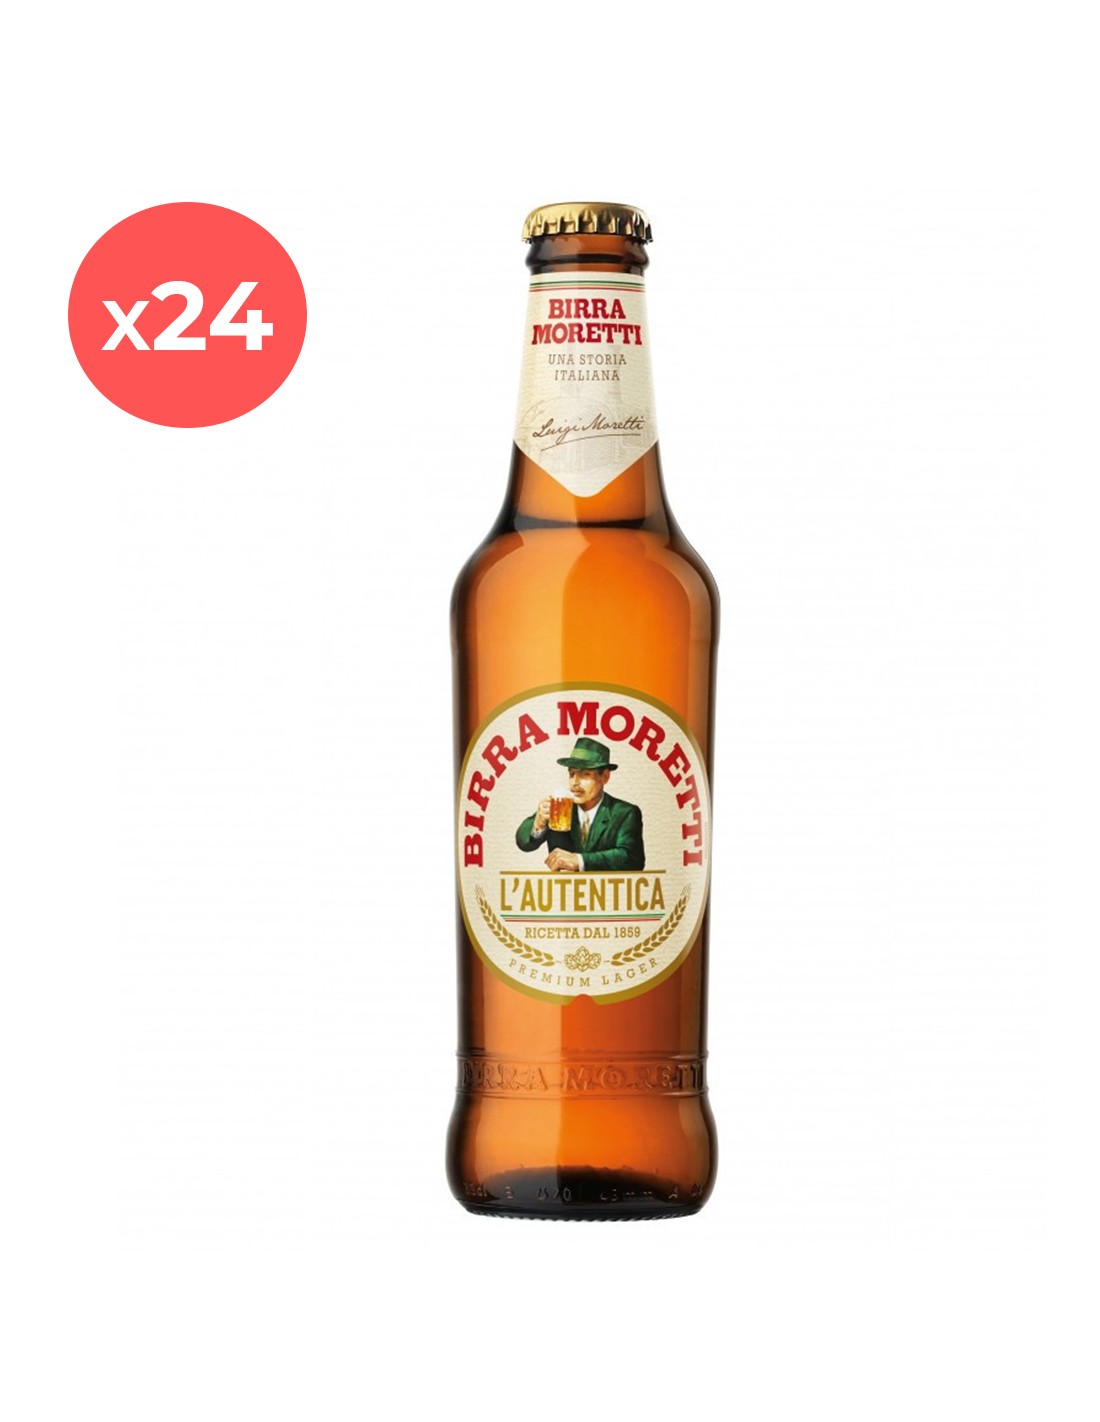 Bax 24 bucati bere blonda Birra Moretti, 4.6% alc., 0.33L, sticla